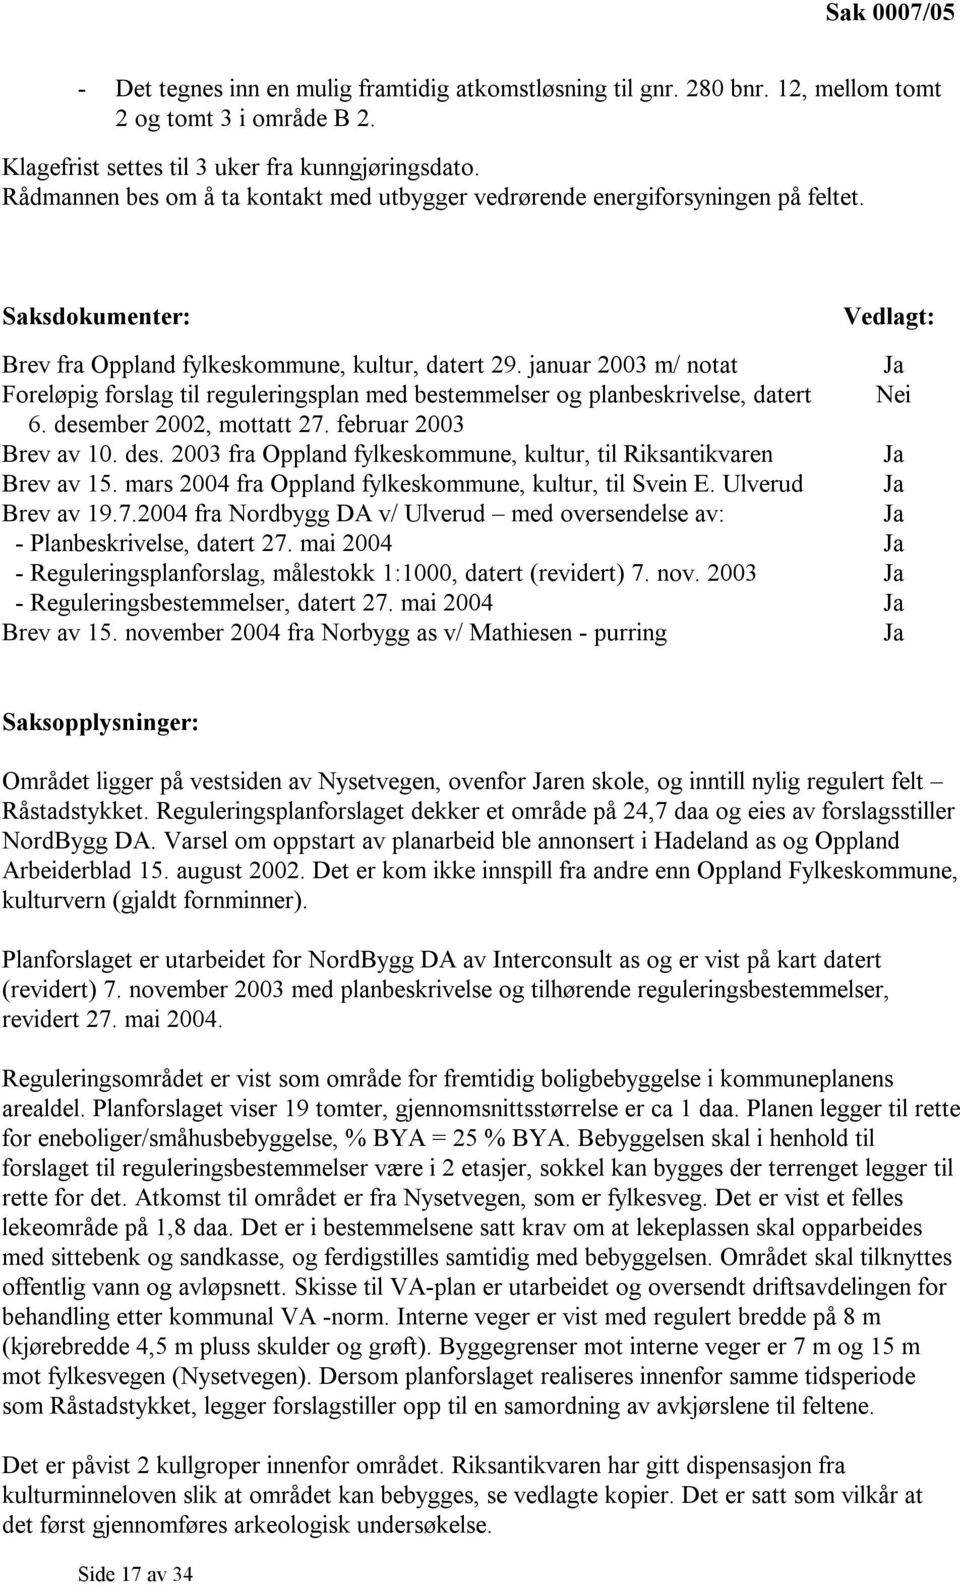 januar 2003 m/ notat Foreløpig forslag til reguleringsplan med bestemmelser og planbeskrivelse, datert 6. desember 2002, mottatt 27. februar 2003 Brev av 10. des. 2003 fra Oppland fylkeskommune, kultur, til Riksantikvaren Brev av 15.